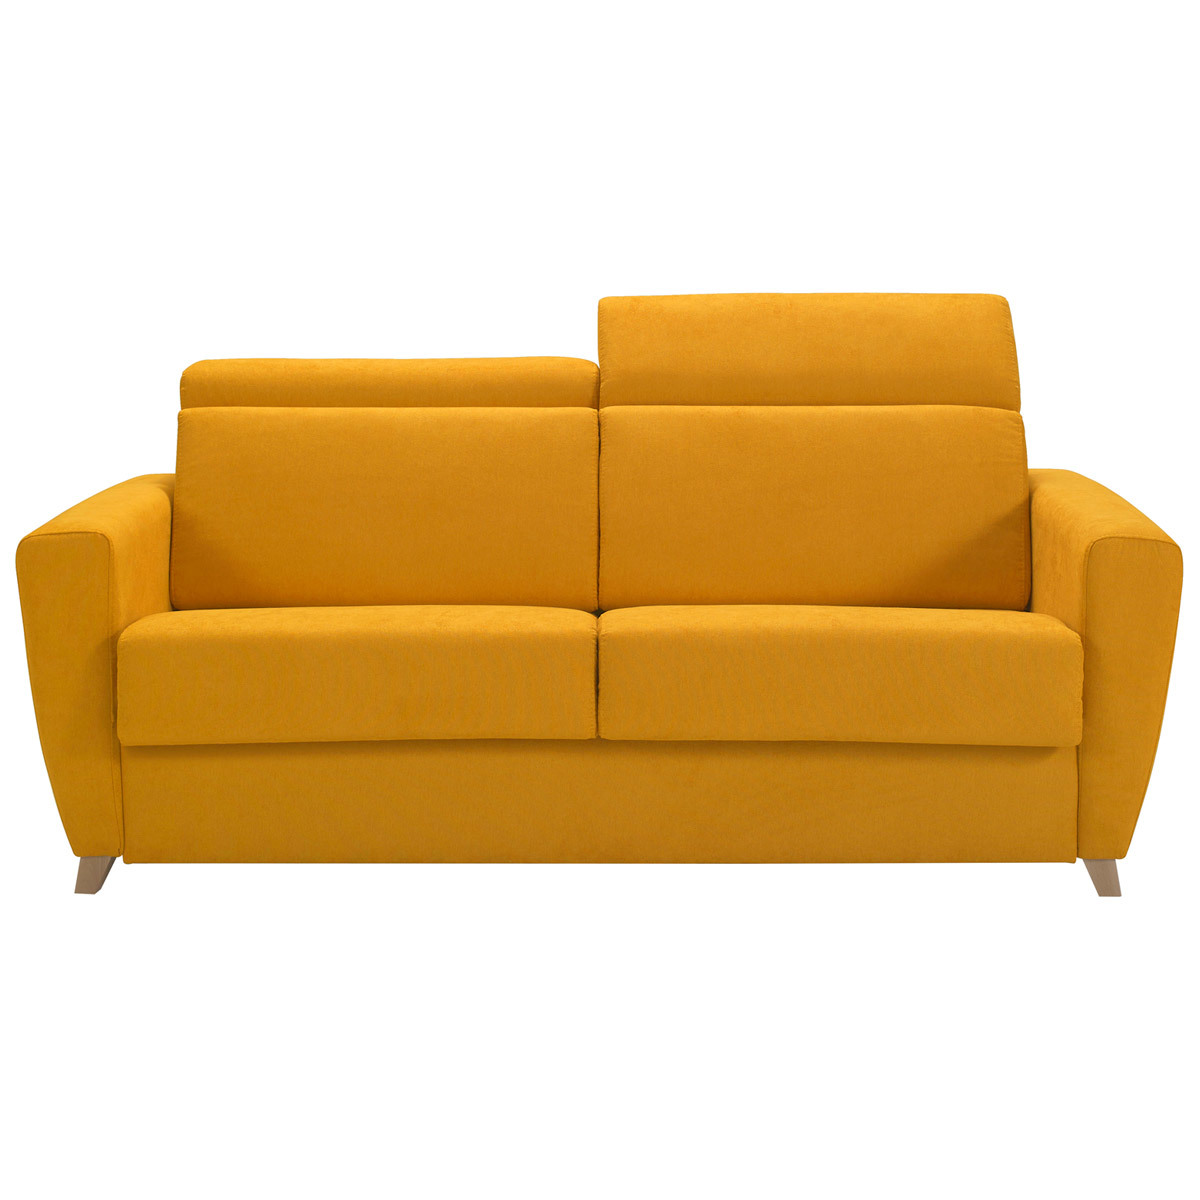 Canapé convertible avec têtières ajustables 3 places en tissu jaune avec matelas 13 cm GOYA vue1